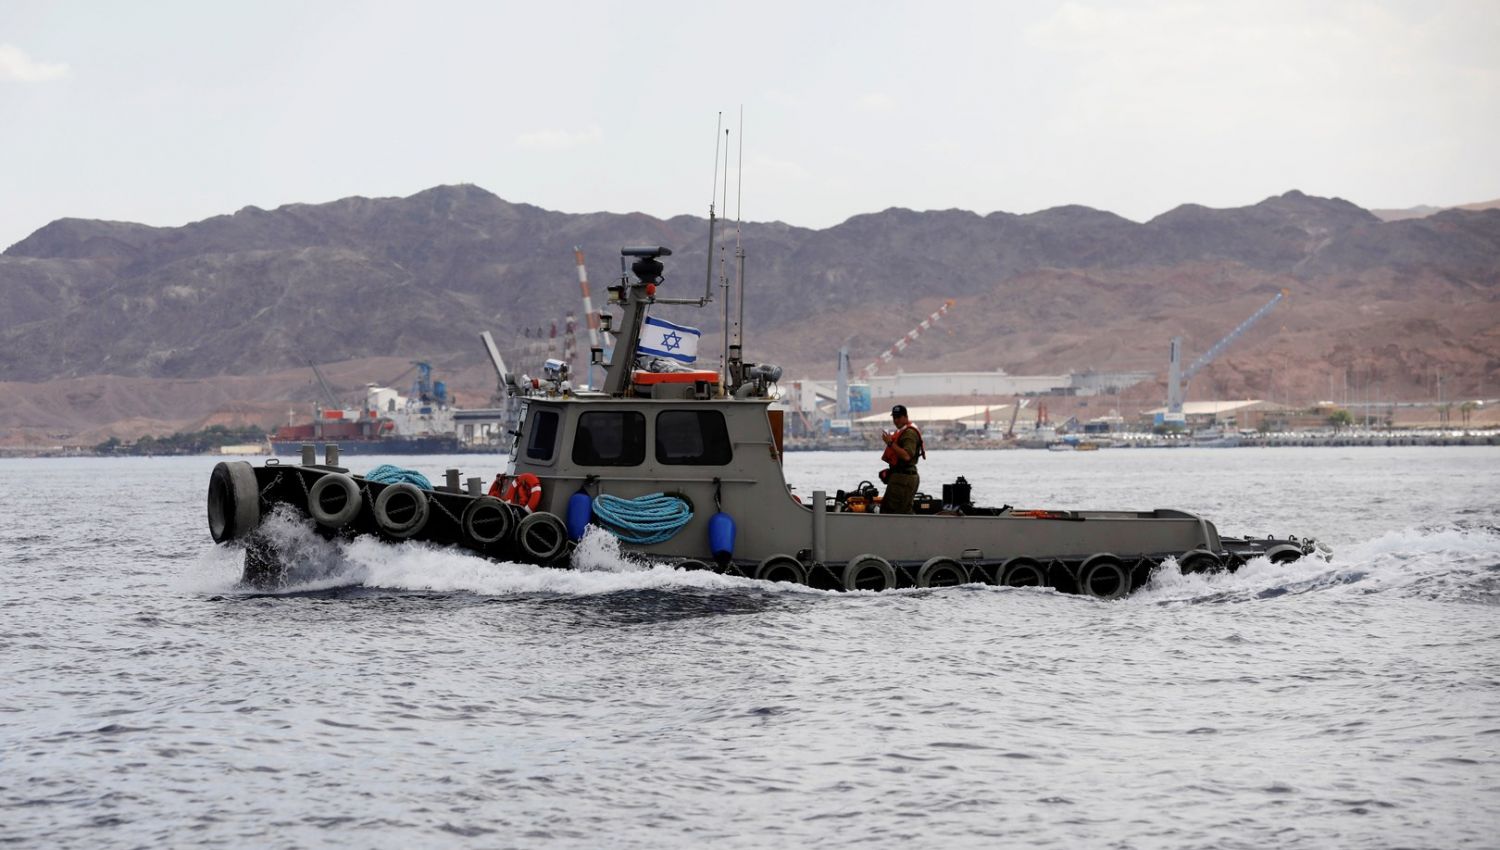 يديعوت أحرنوت: "إسرائيل" أكثر عرضة للخطر بالمواجهة البحرية مع إيران